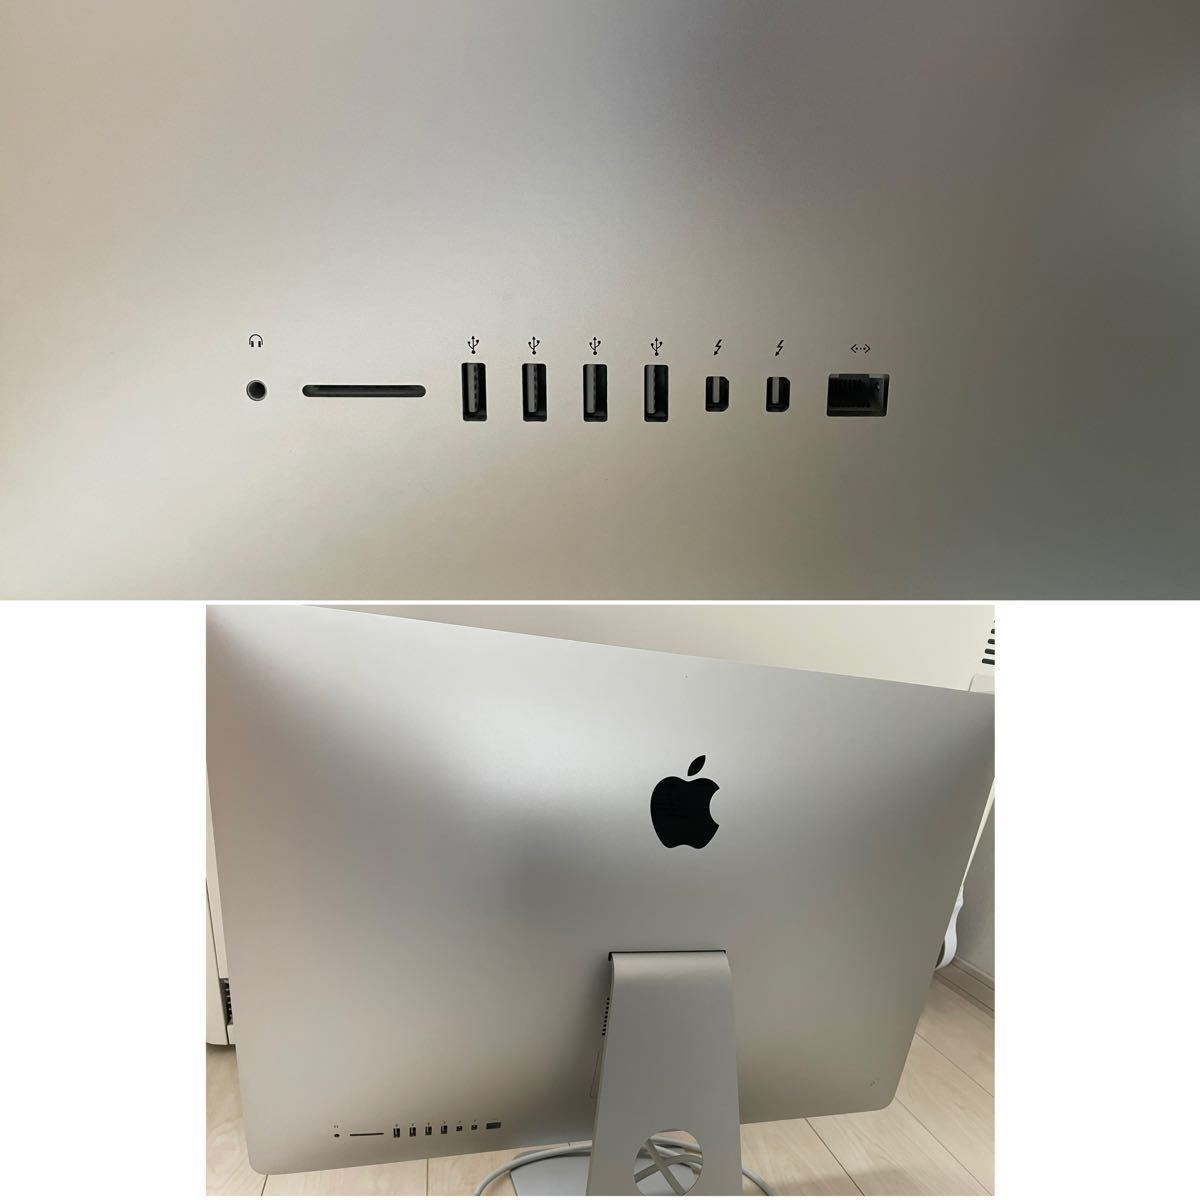 Apple iMac A1419 EMC2639 2013 27インチ Intel Core i5-4570 3.2GHz HDD1TB RAM8GB_画像2